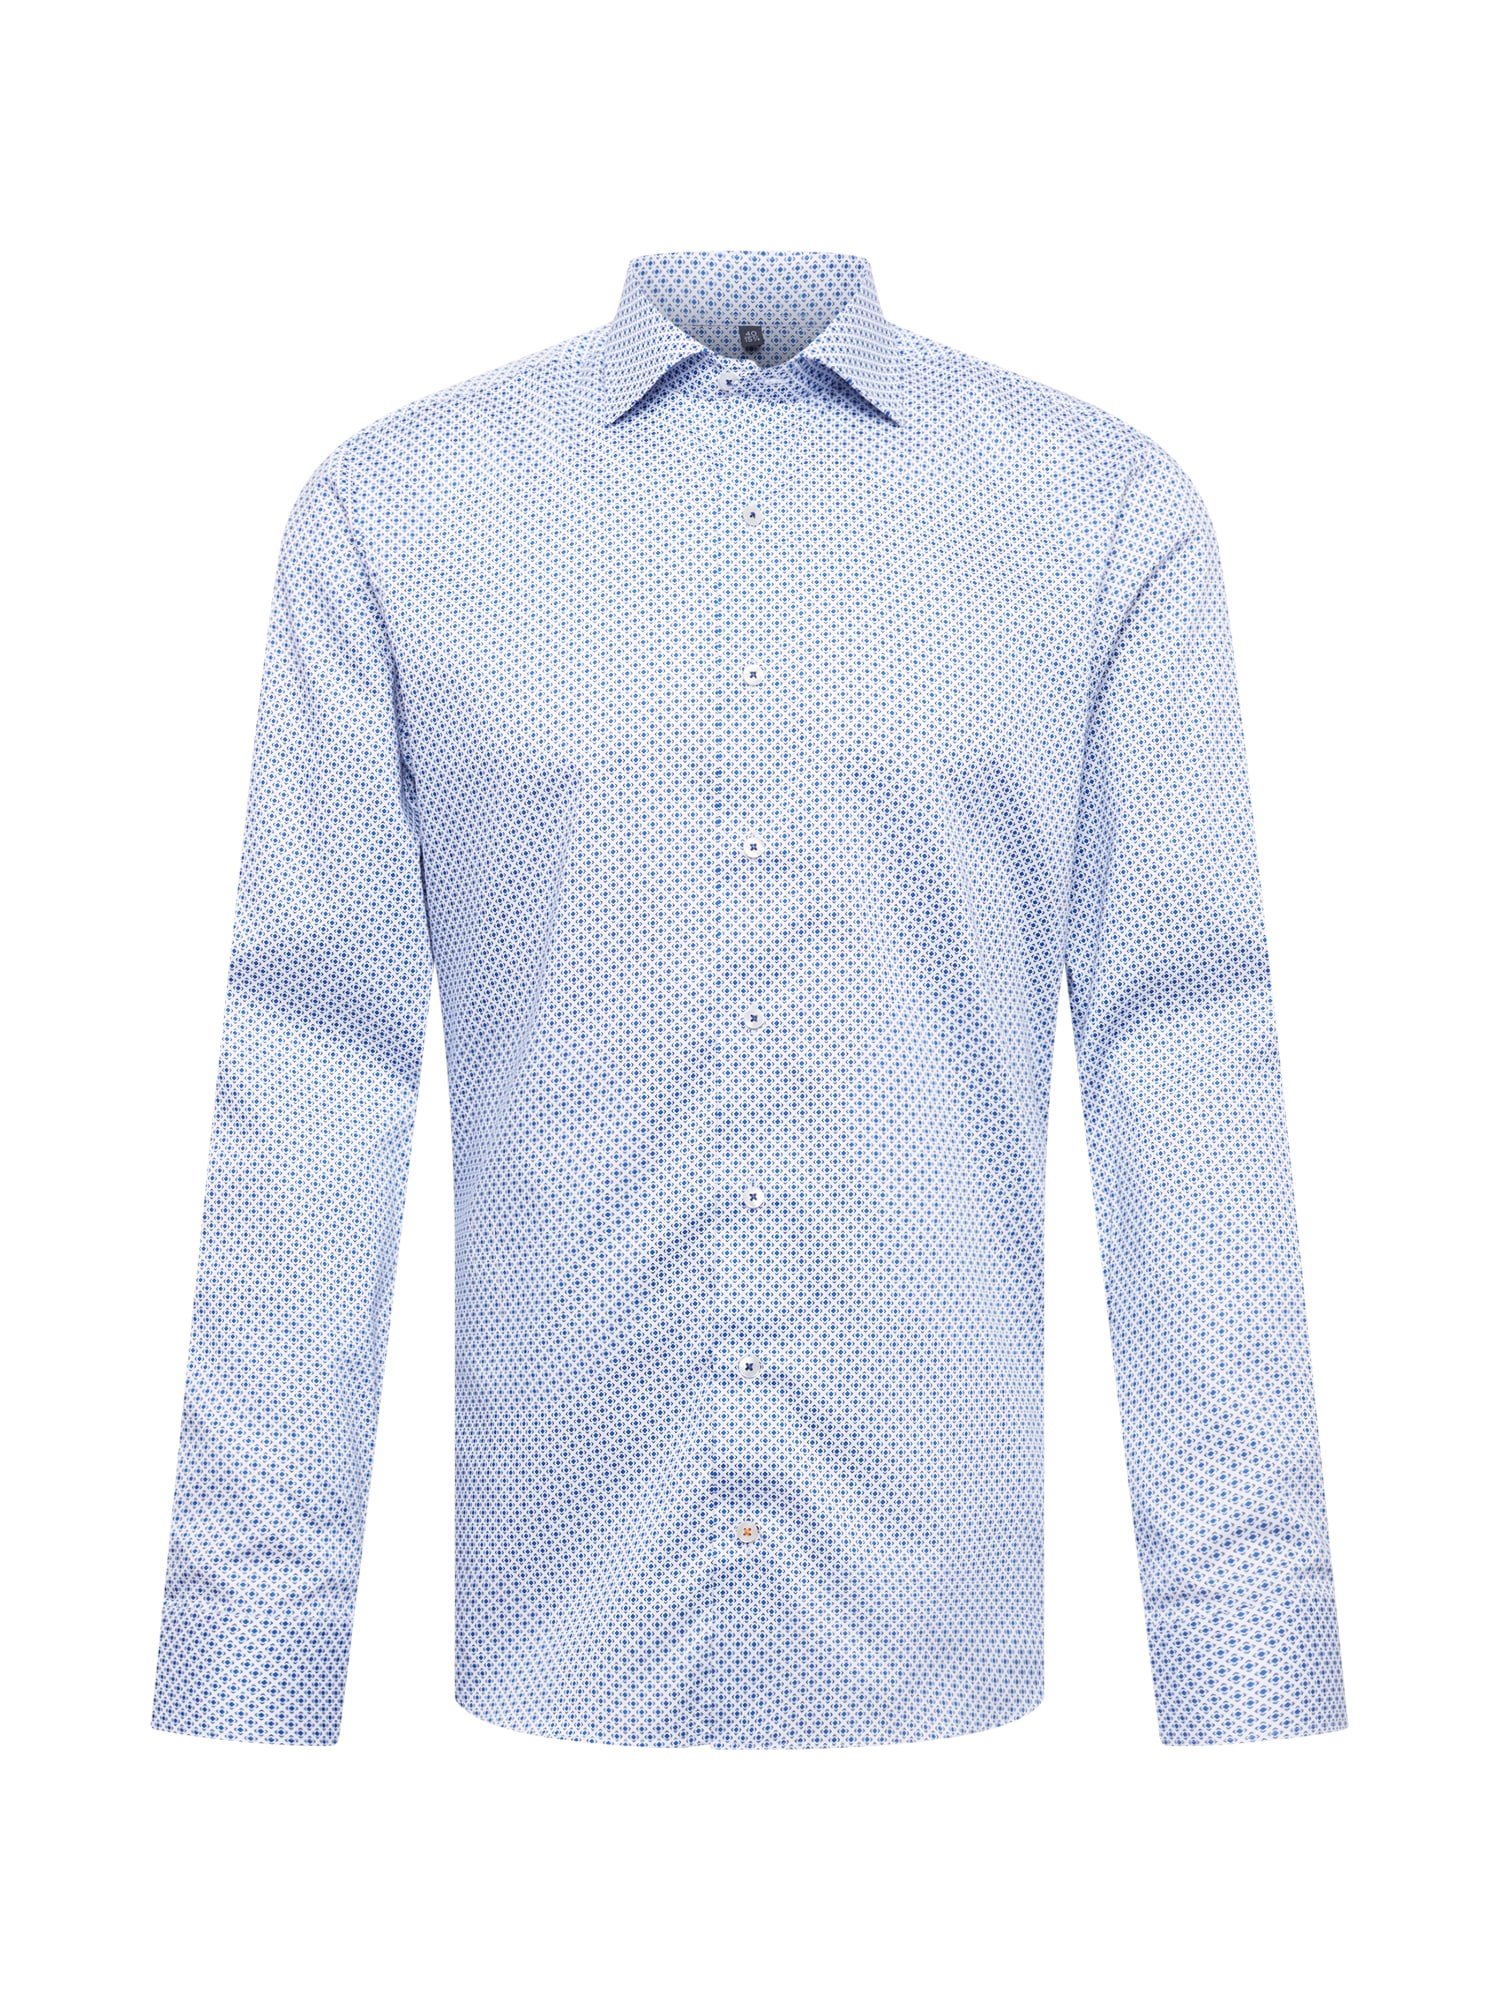 ETERNA Dalykinio stiliaus marškiniai mėlyna / tamsiai mėlyna jūros spalva / balta